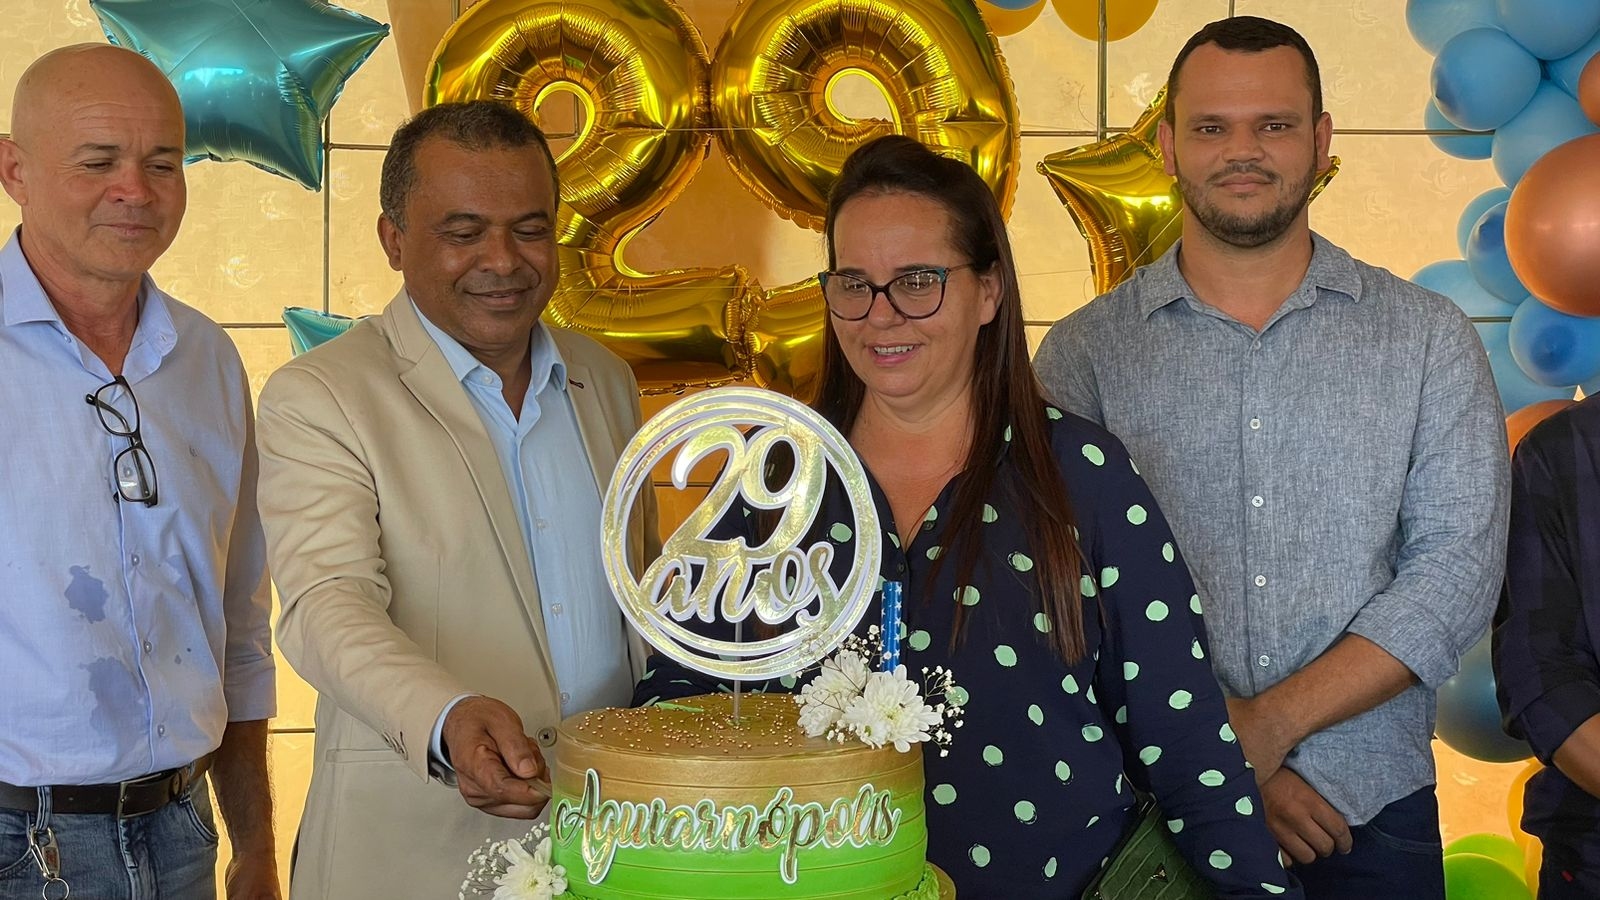 Festa de aniversário da cidade foi um sucesso e marcou os 29 anos de emancipação política do município